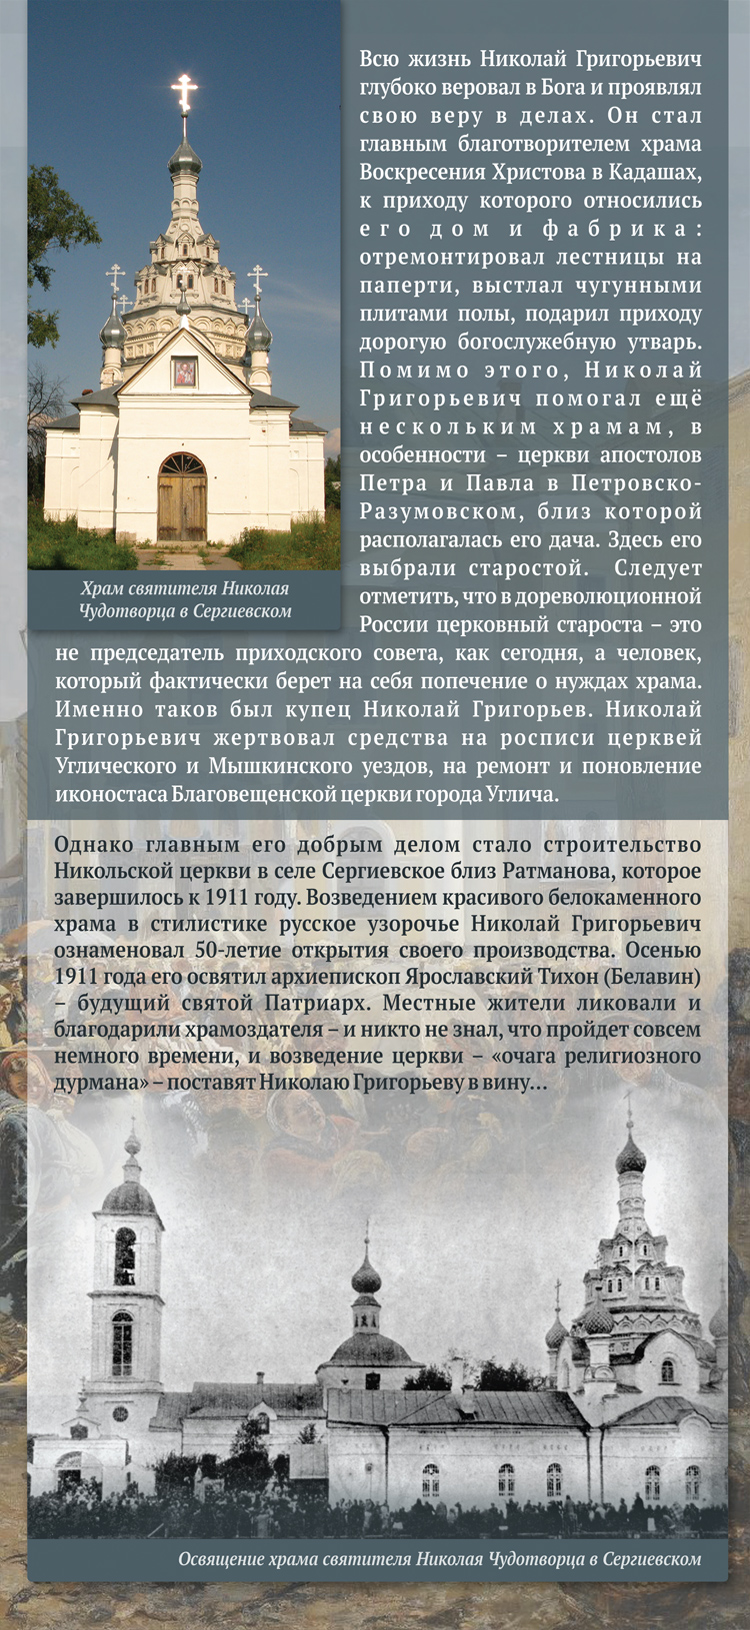 Храм Святителя Николая Чудотворца в Сергиевском